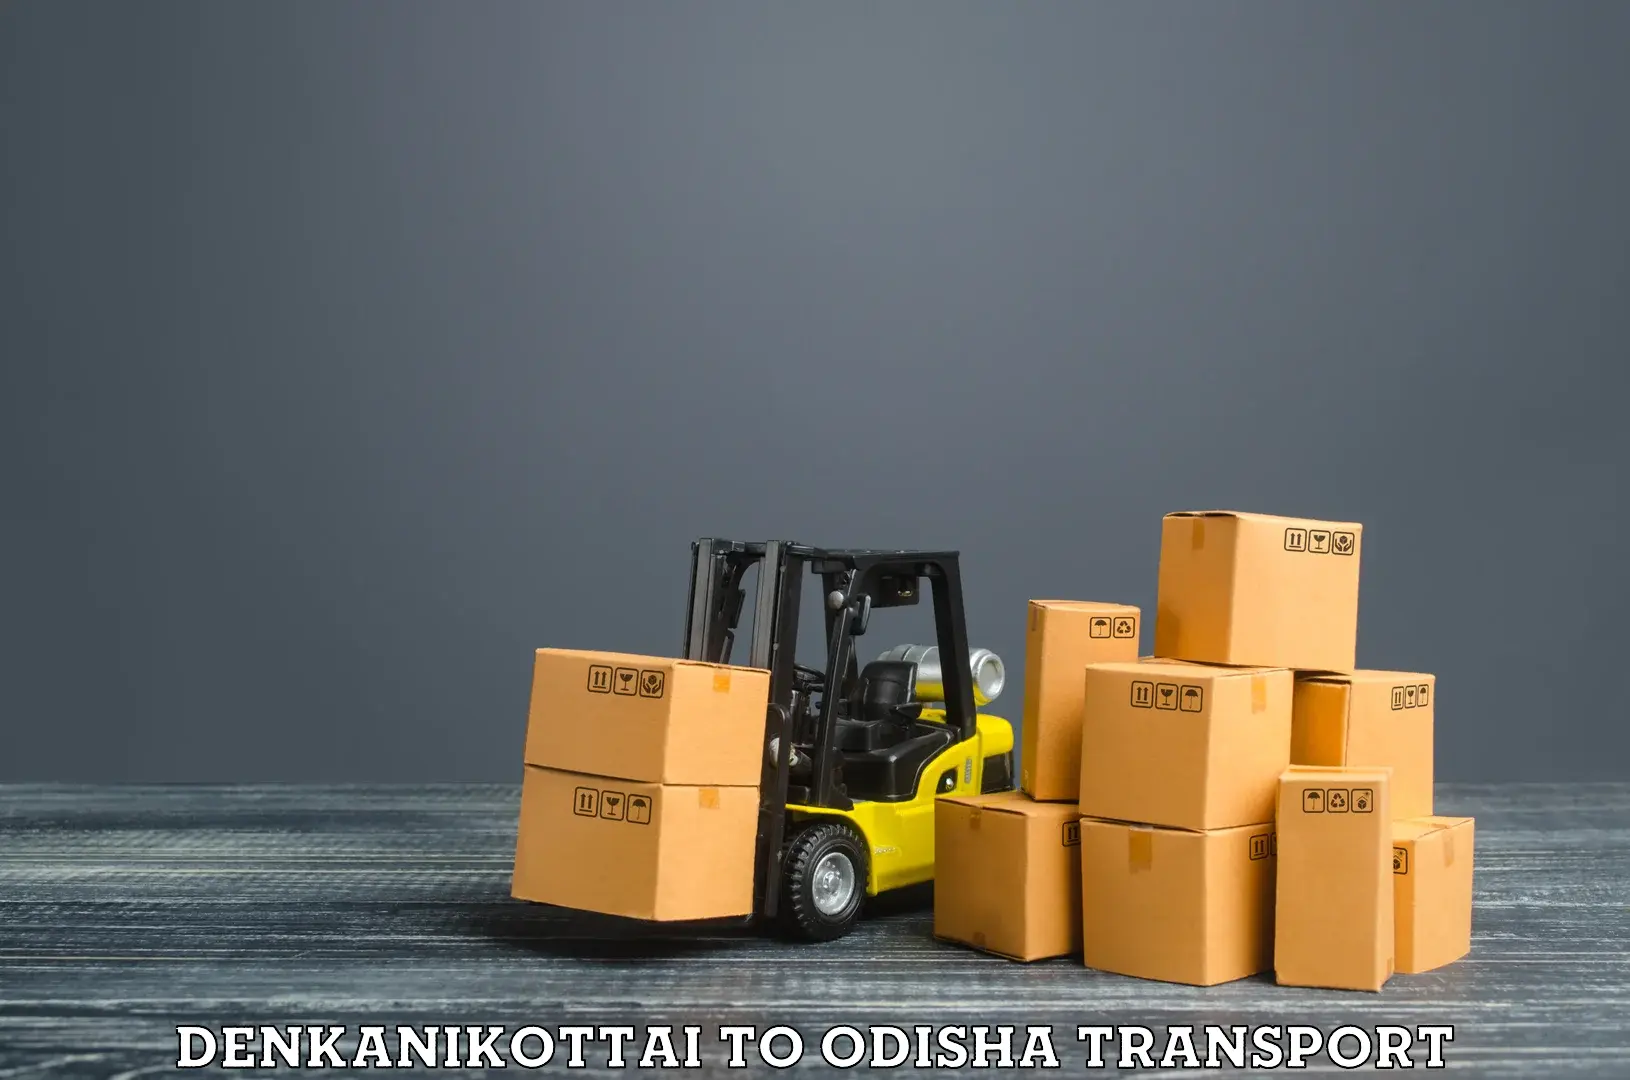 Vehicle transport services Denkanikottai to Morada